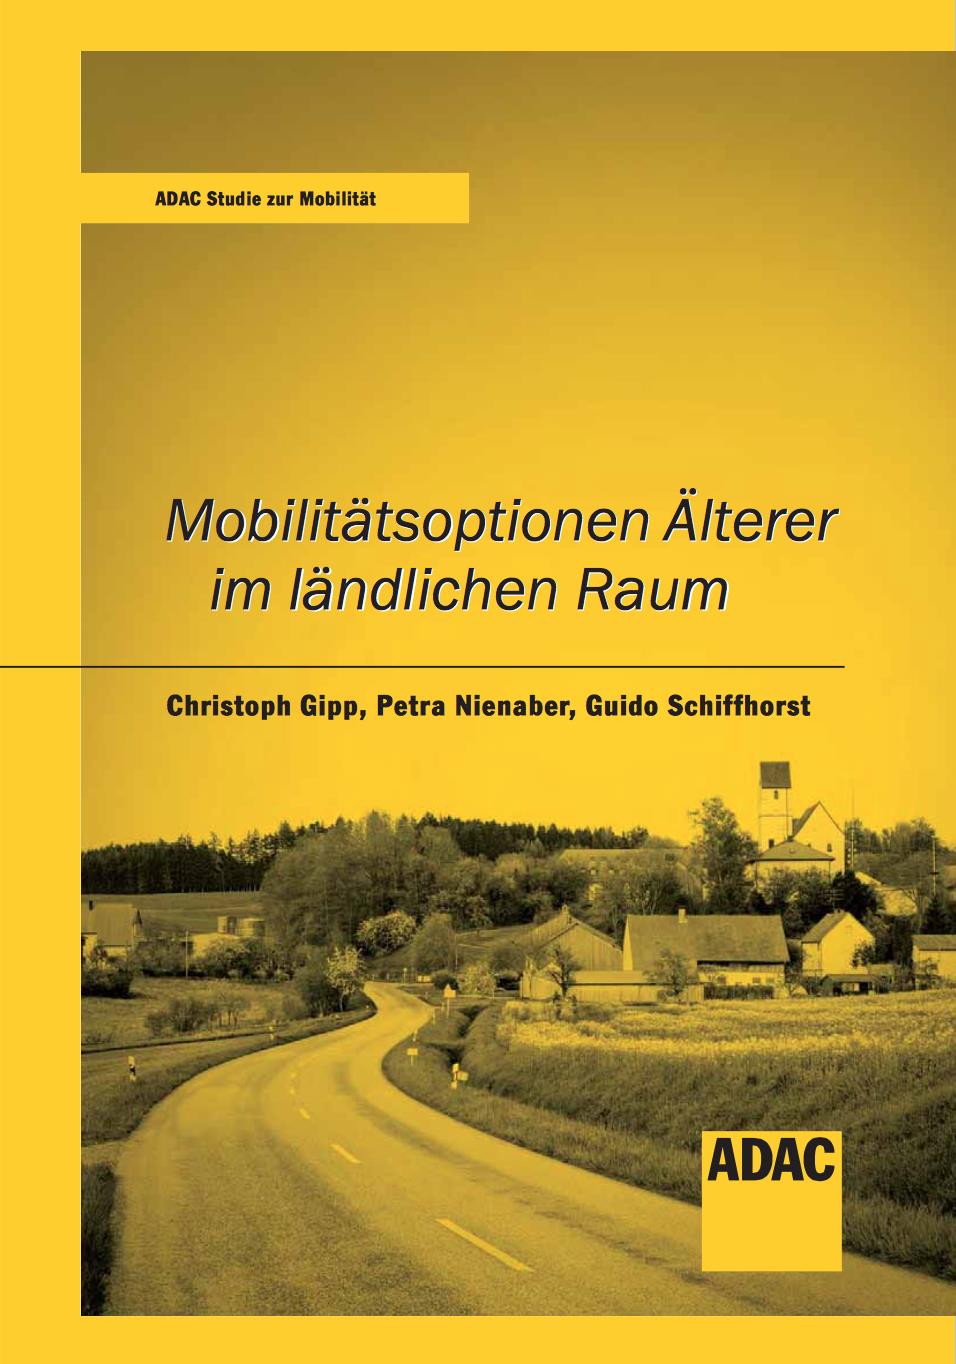 Weiterführende Informationen Weitere Informationen Komplette ADAC-Studie* Mobilitätsoptionen im ländlichen Raum als Download: https://www.adac.